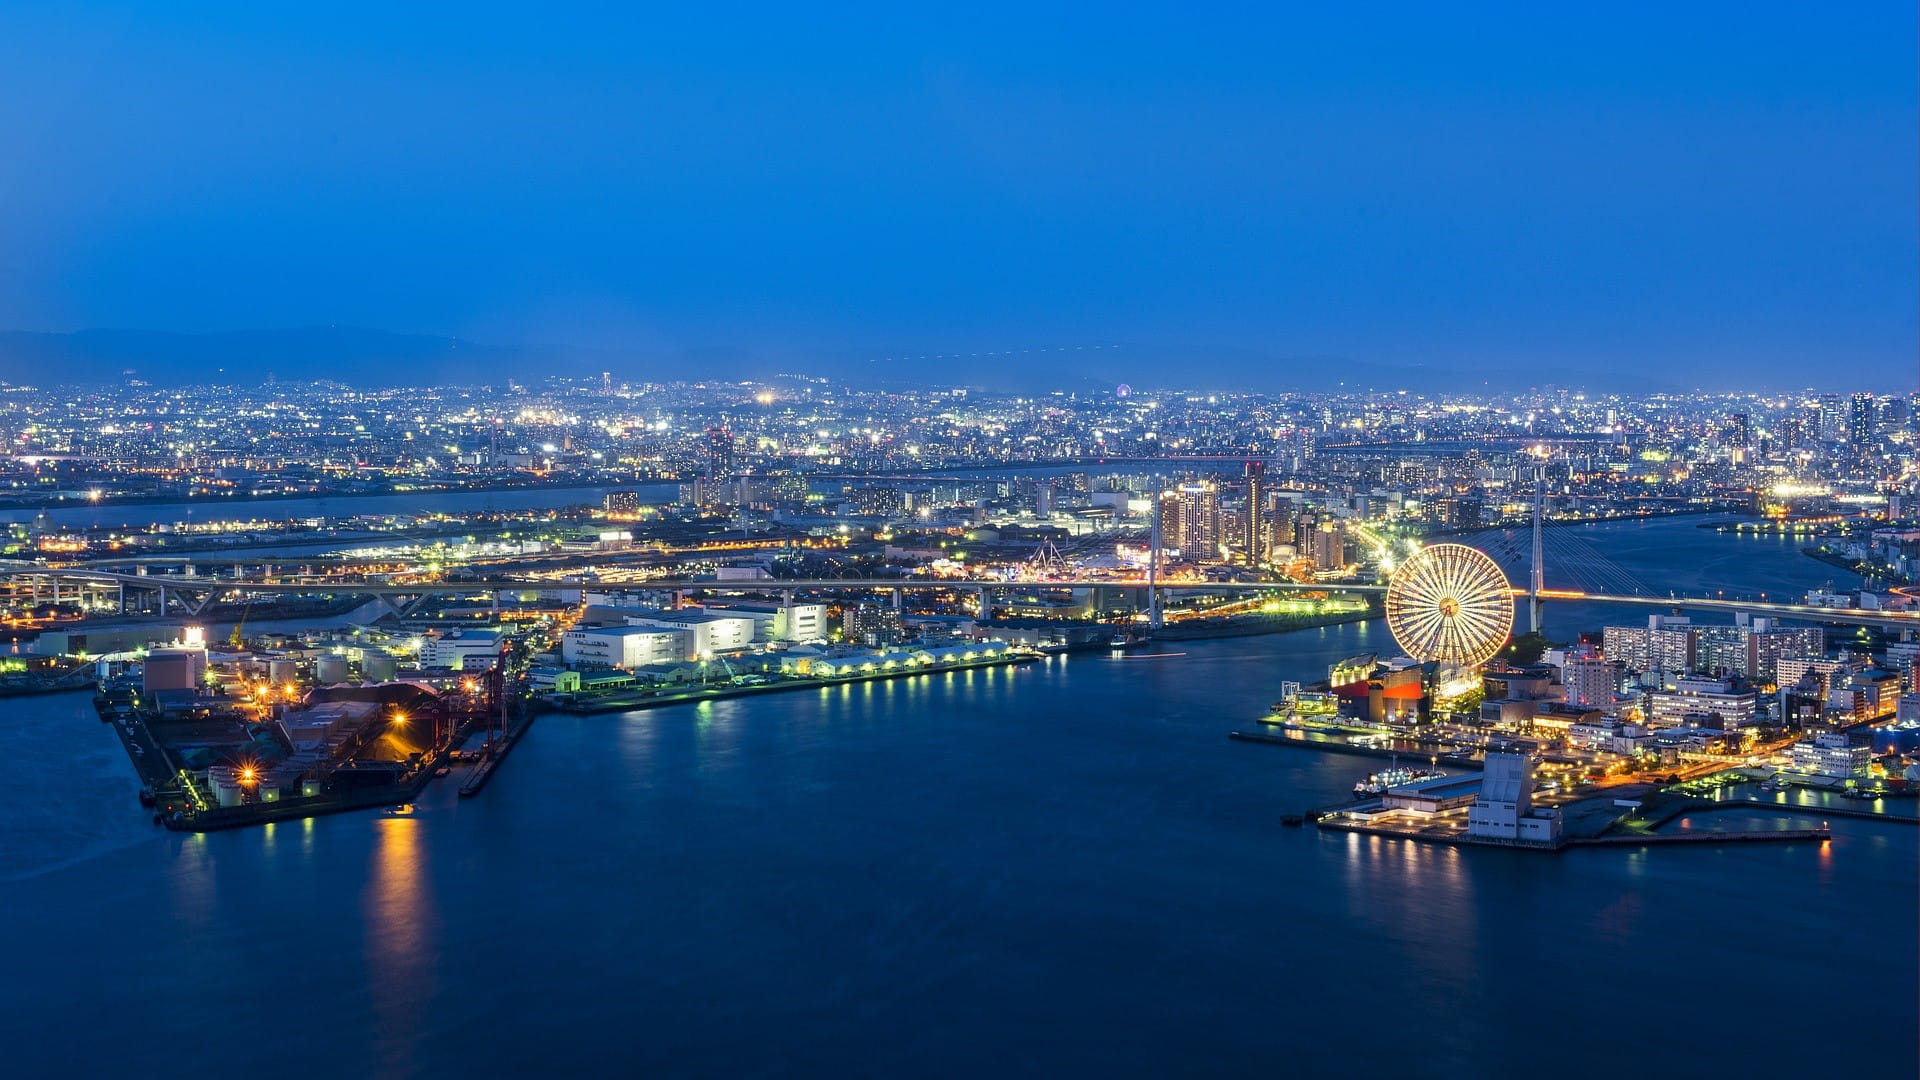 Osaka di malam hari: di latar depan adalah pelabuhan, di belakangnya adalah kota.